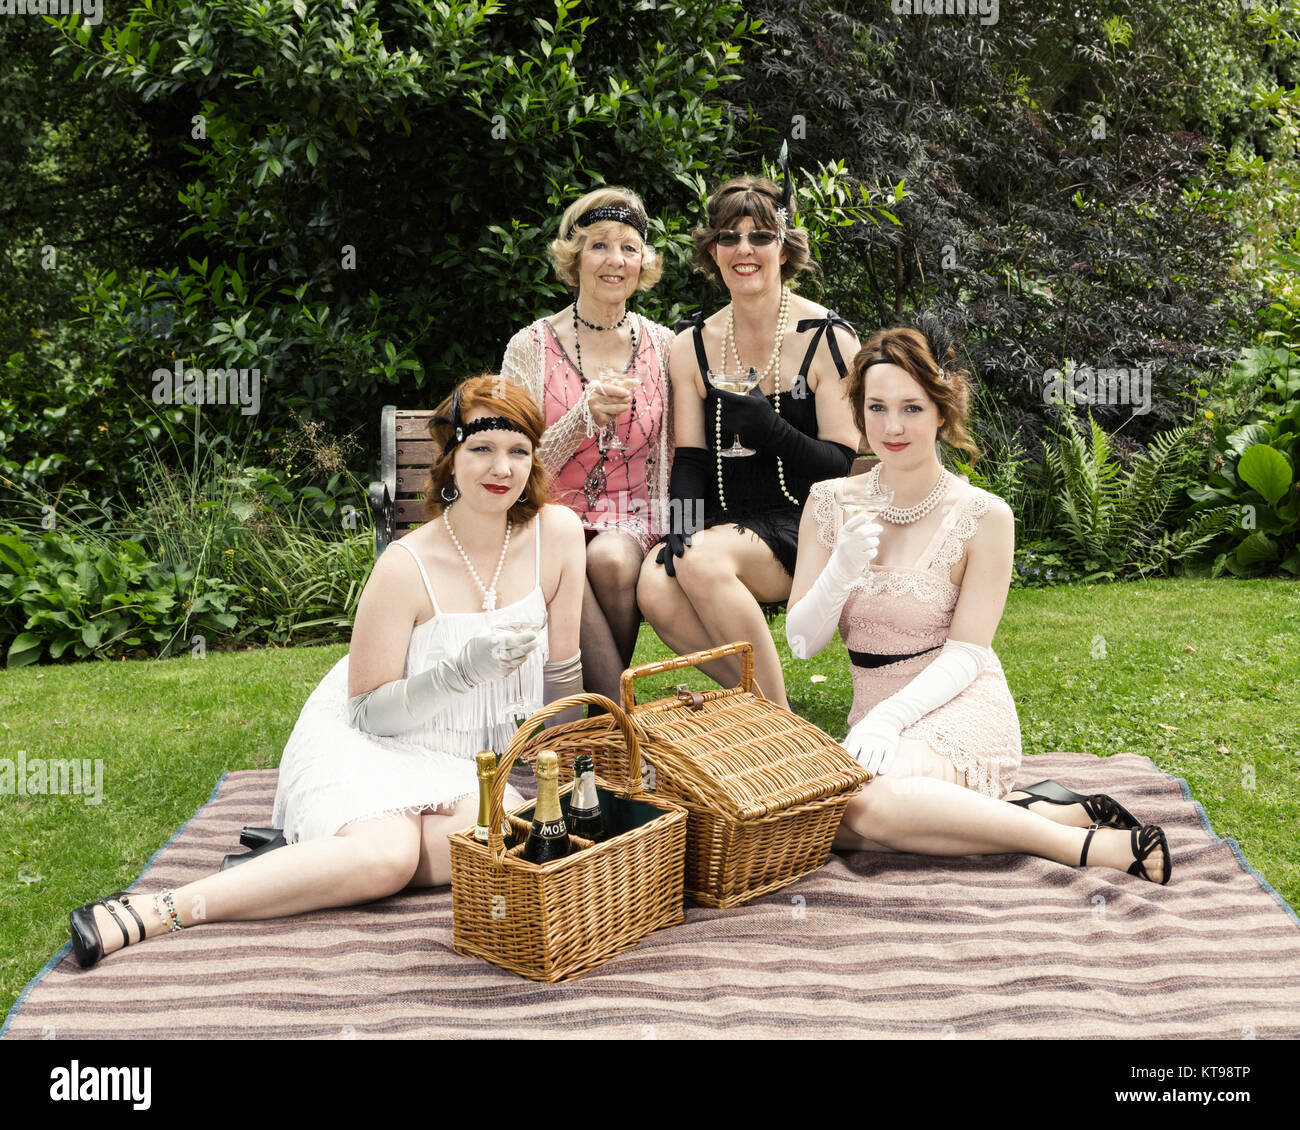 Jardin de style années 30, pique-nique en habits d'époque Banque D'Images